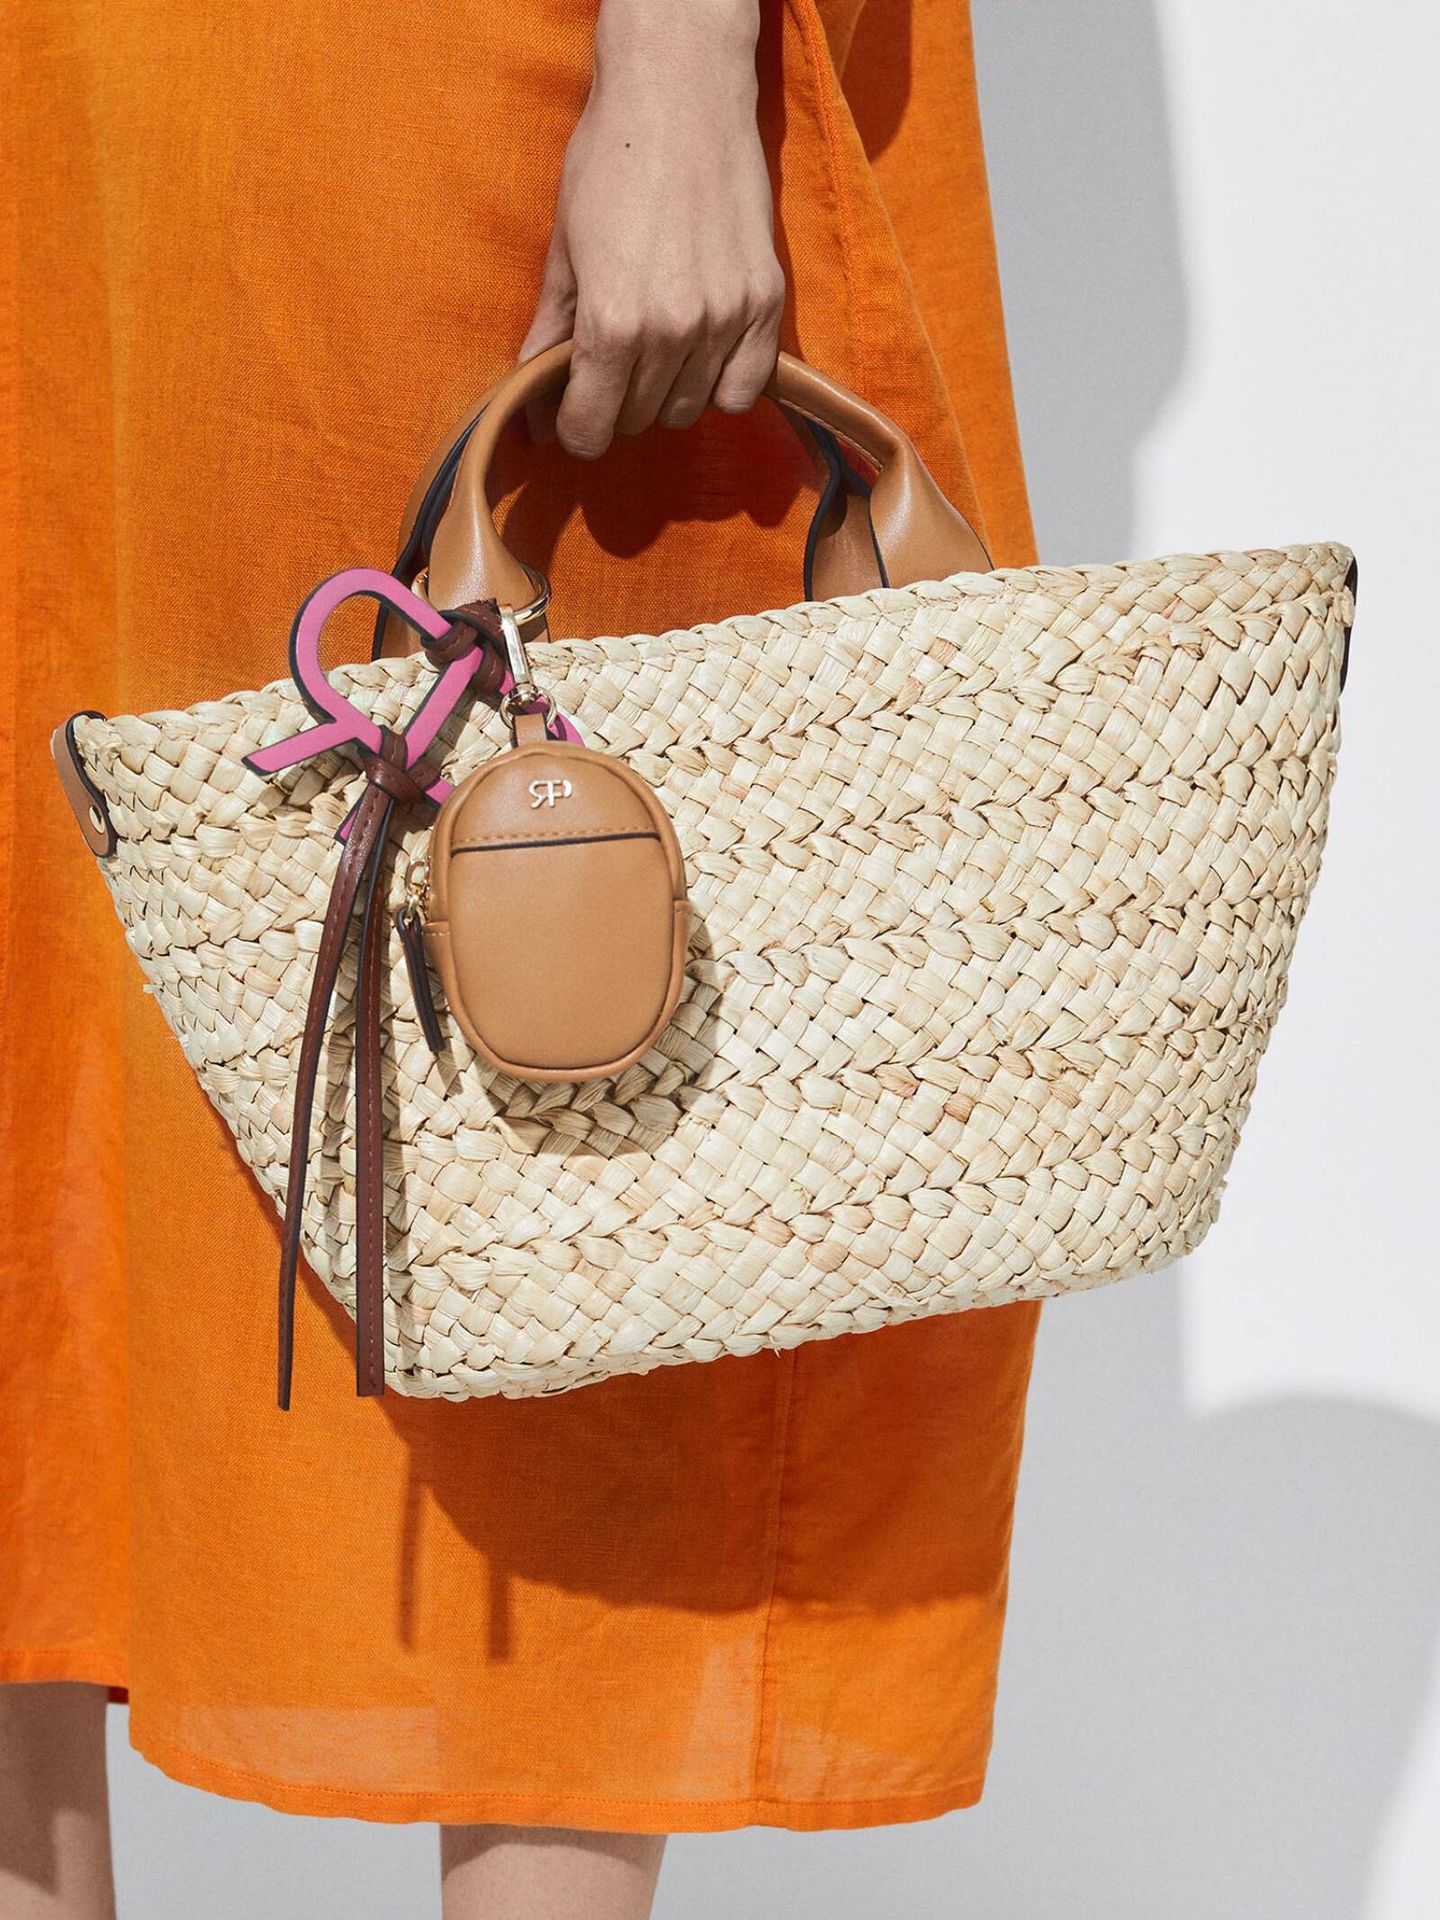 Esta cesta es el bolso perfecto para las noches de verano